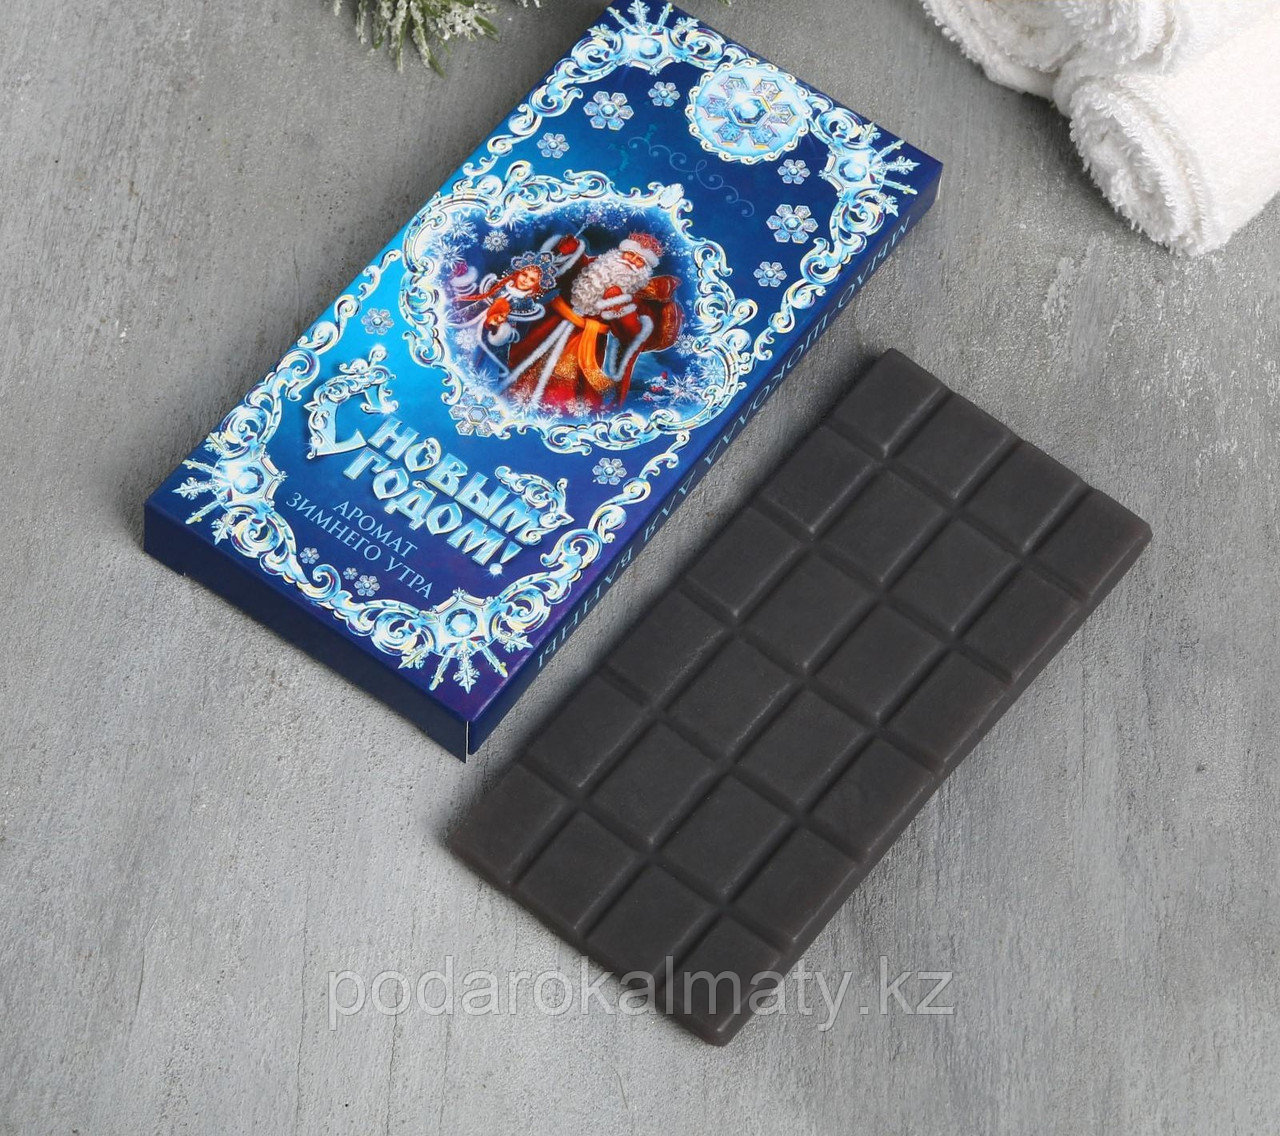 Мыло-шоколад "С Новым годом, синий"